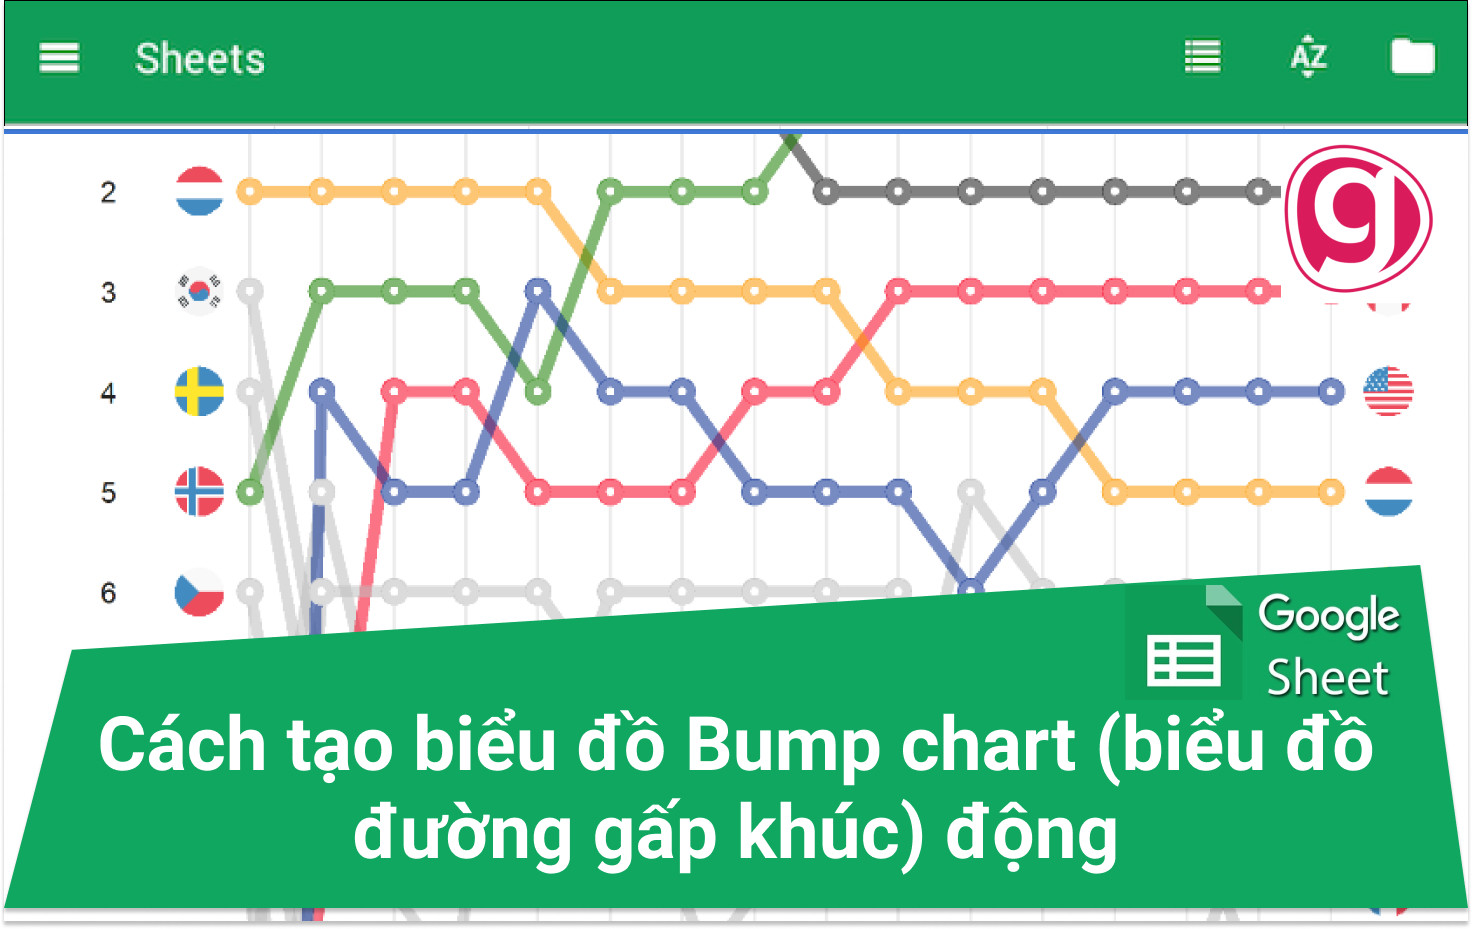 Biểu đồ Bump chart là một công cụ tuyệt vời để so sánh thứ hạng của các mục trong một số lượng lớn. Với một cái nhìn, bạn có thể thấy được sự tăng trưởng và suy giảm của từng mục theo thời gian. Hãy xem hình ảnh liên quan để khám phá thêm về biểu đồ Bump chart và tìm hiểu cách nó có thể giúp bạn trong công việc.